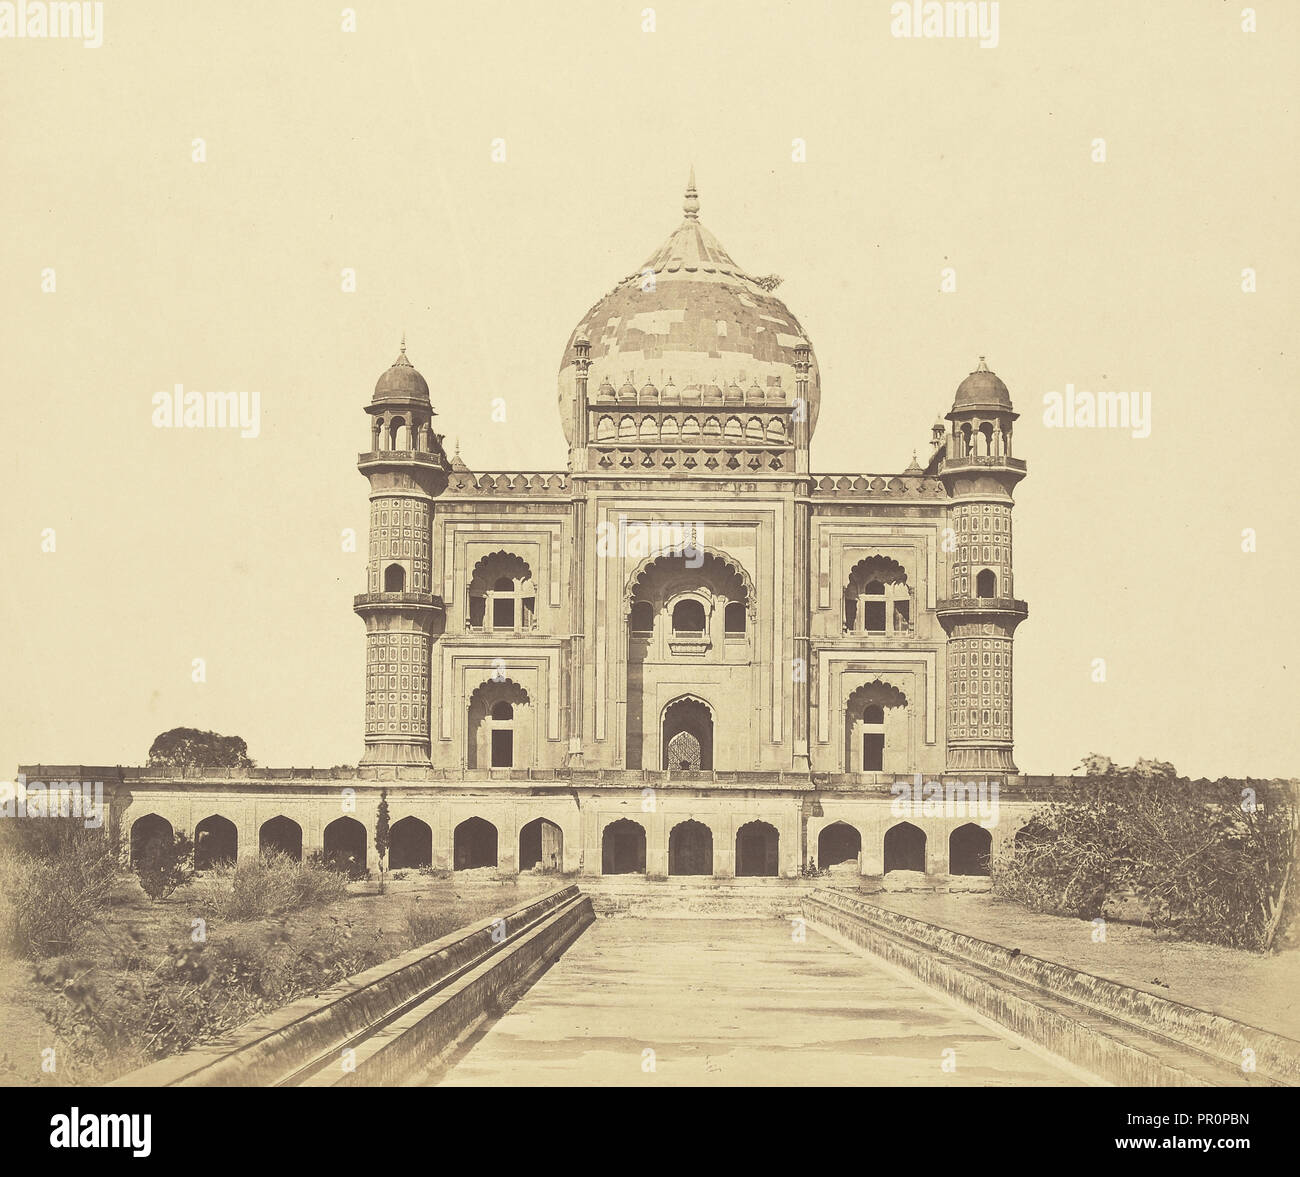 Sufter Jung's Tomb; Felice Beato, 1832 - 1909, Delhi, India; 1858; Albumen silver print Stock Photo